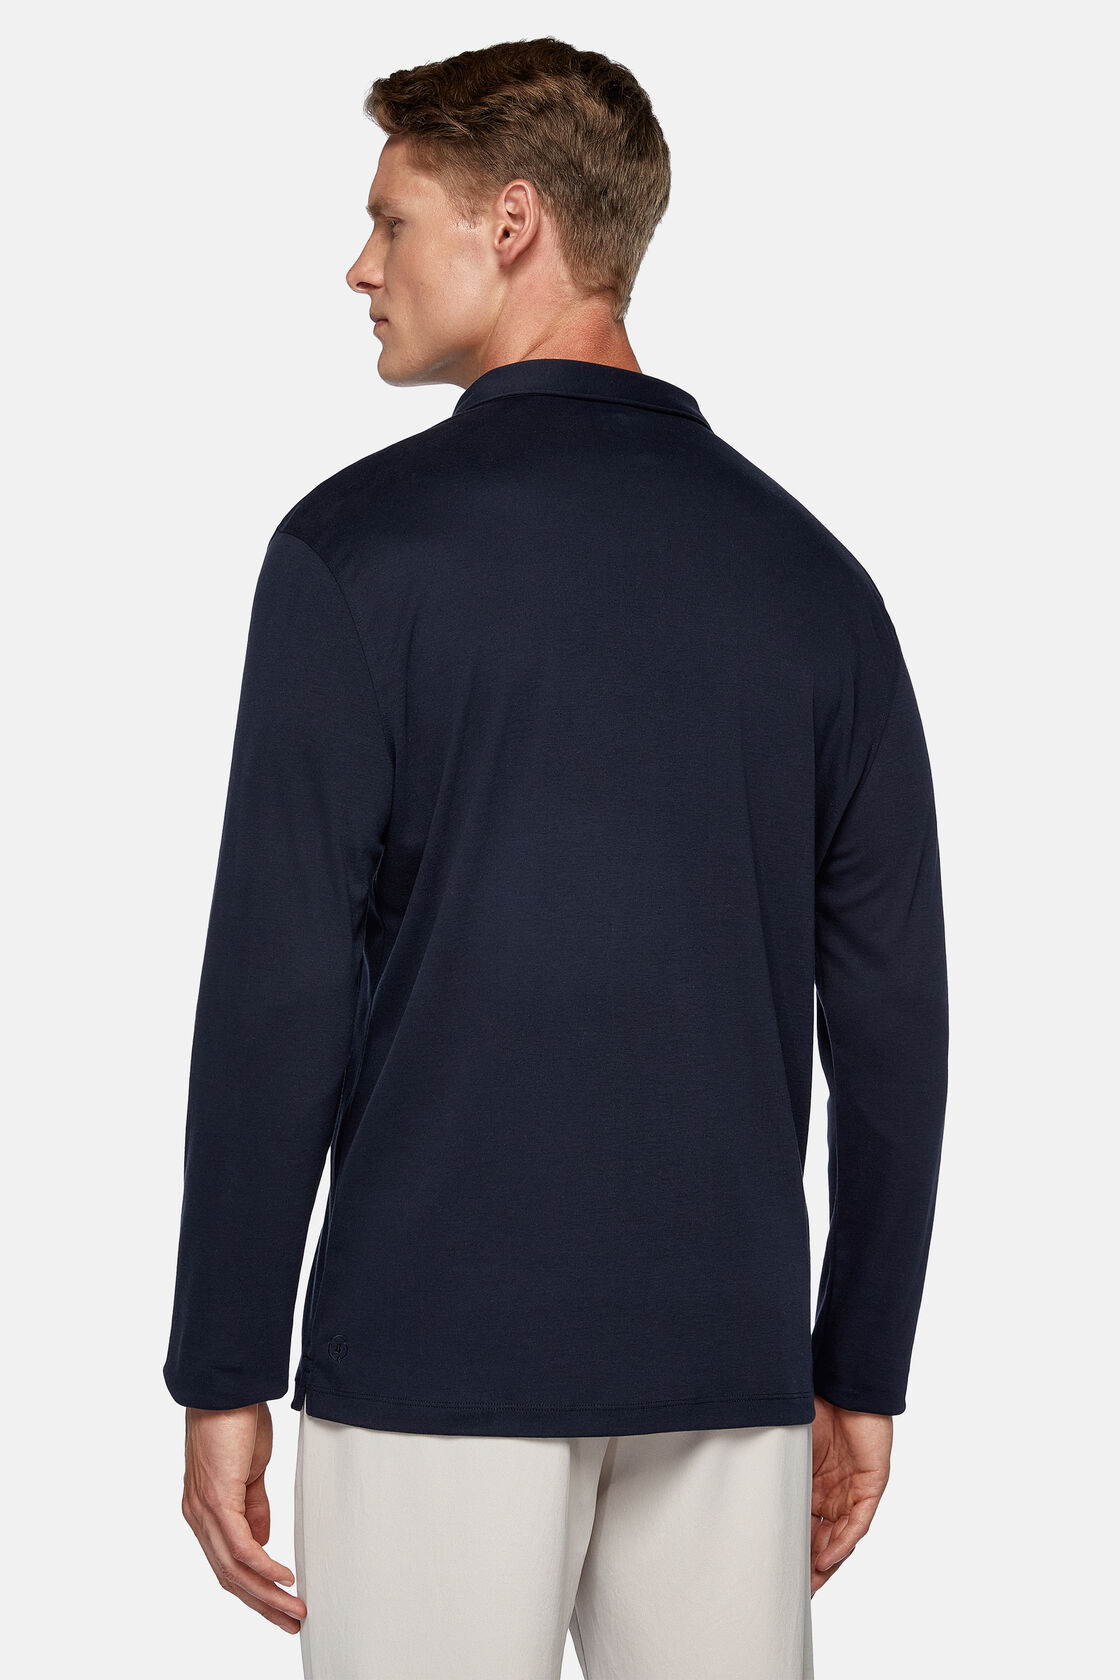 Μπλουζάκι πόλο από σύμμεικτο βαμβάκι υψηλών προδιαγραφών, Navy blue, hi-res